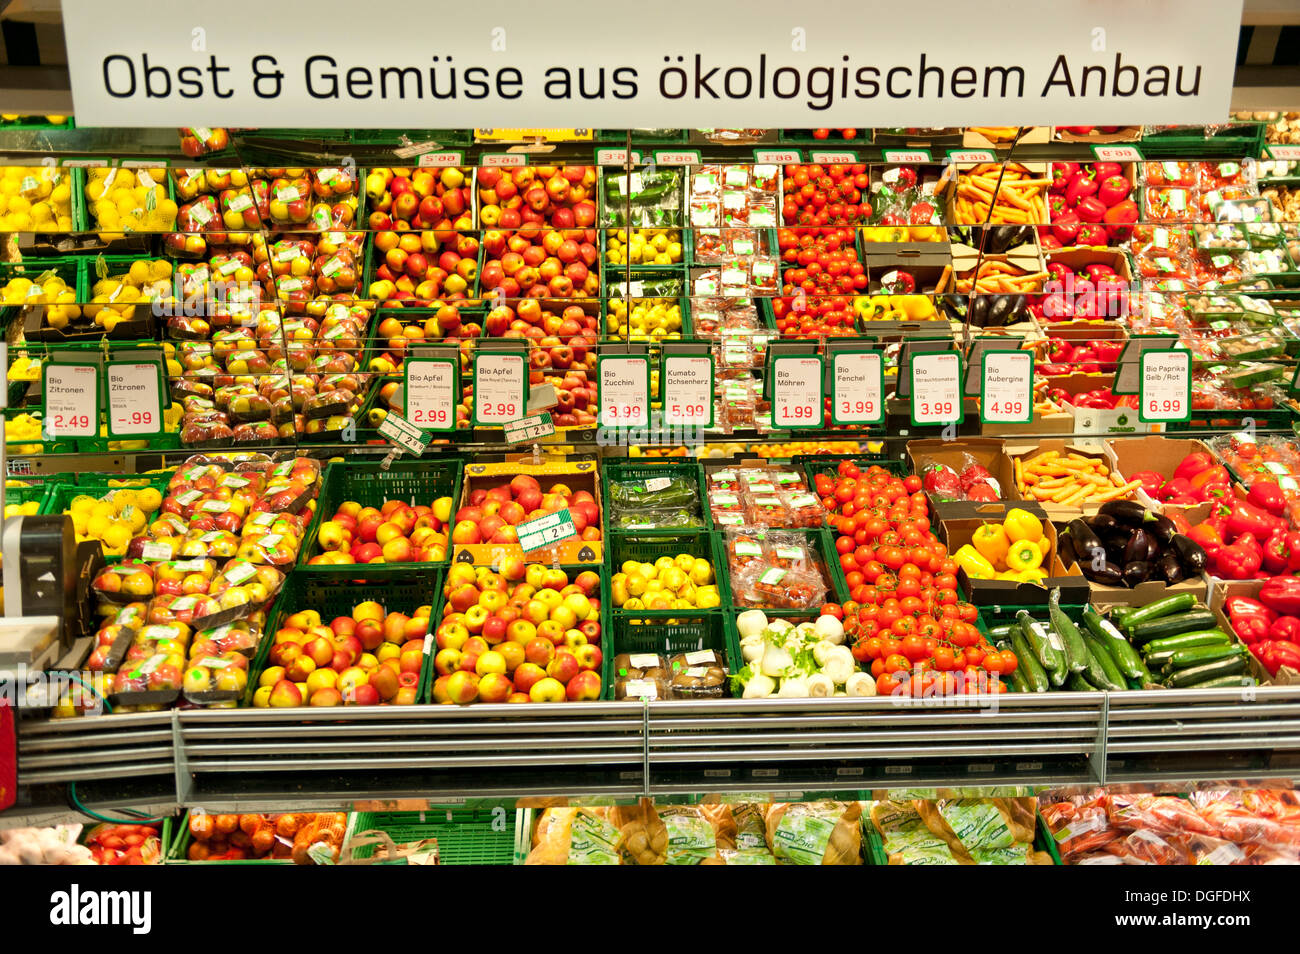 Sign in German 'Obst und Gemüse aus ökologischem Anbau', fresh organic fruit and vegetables, display in a supermarket Stock Photo